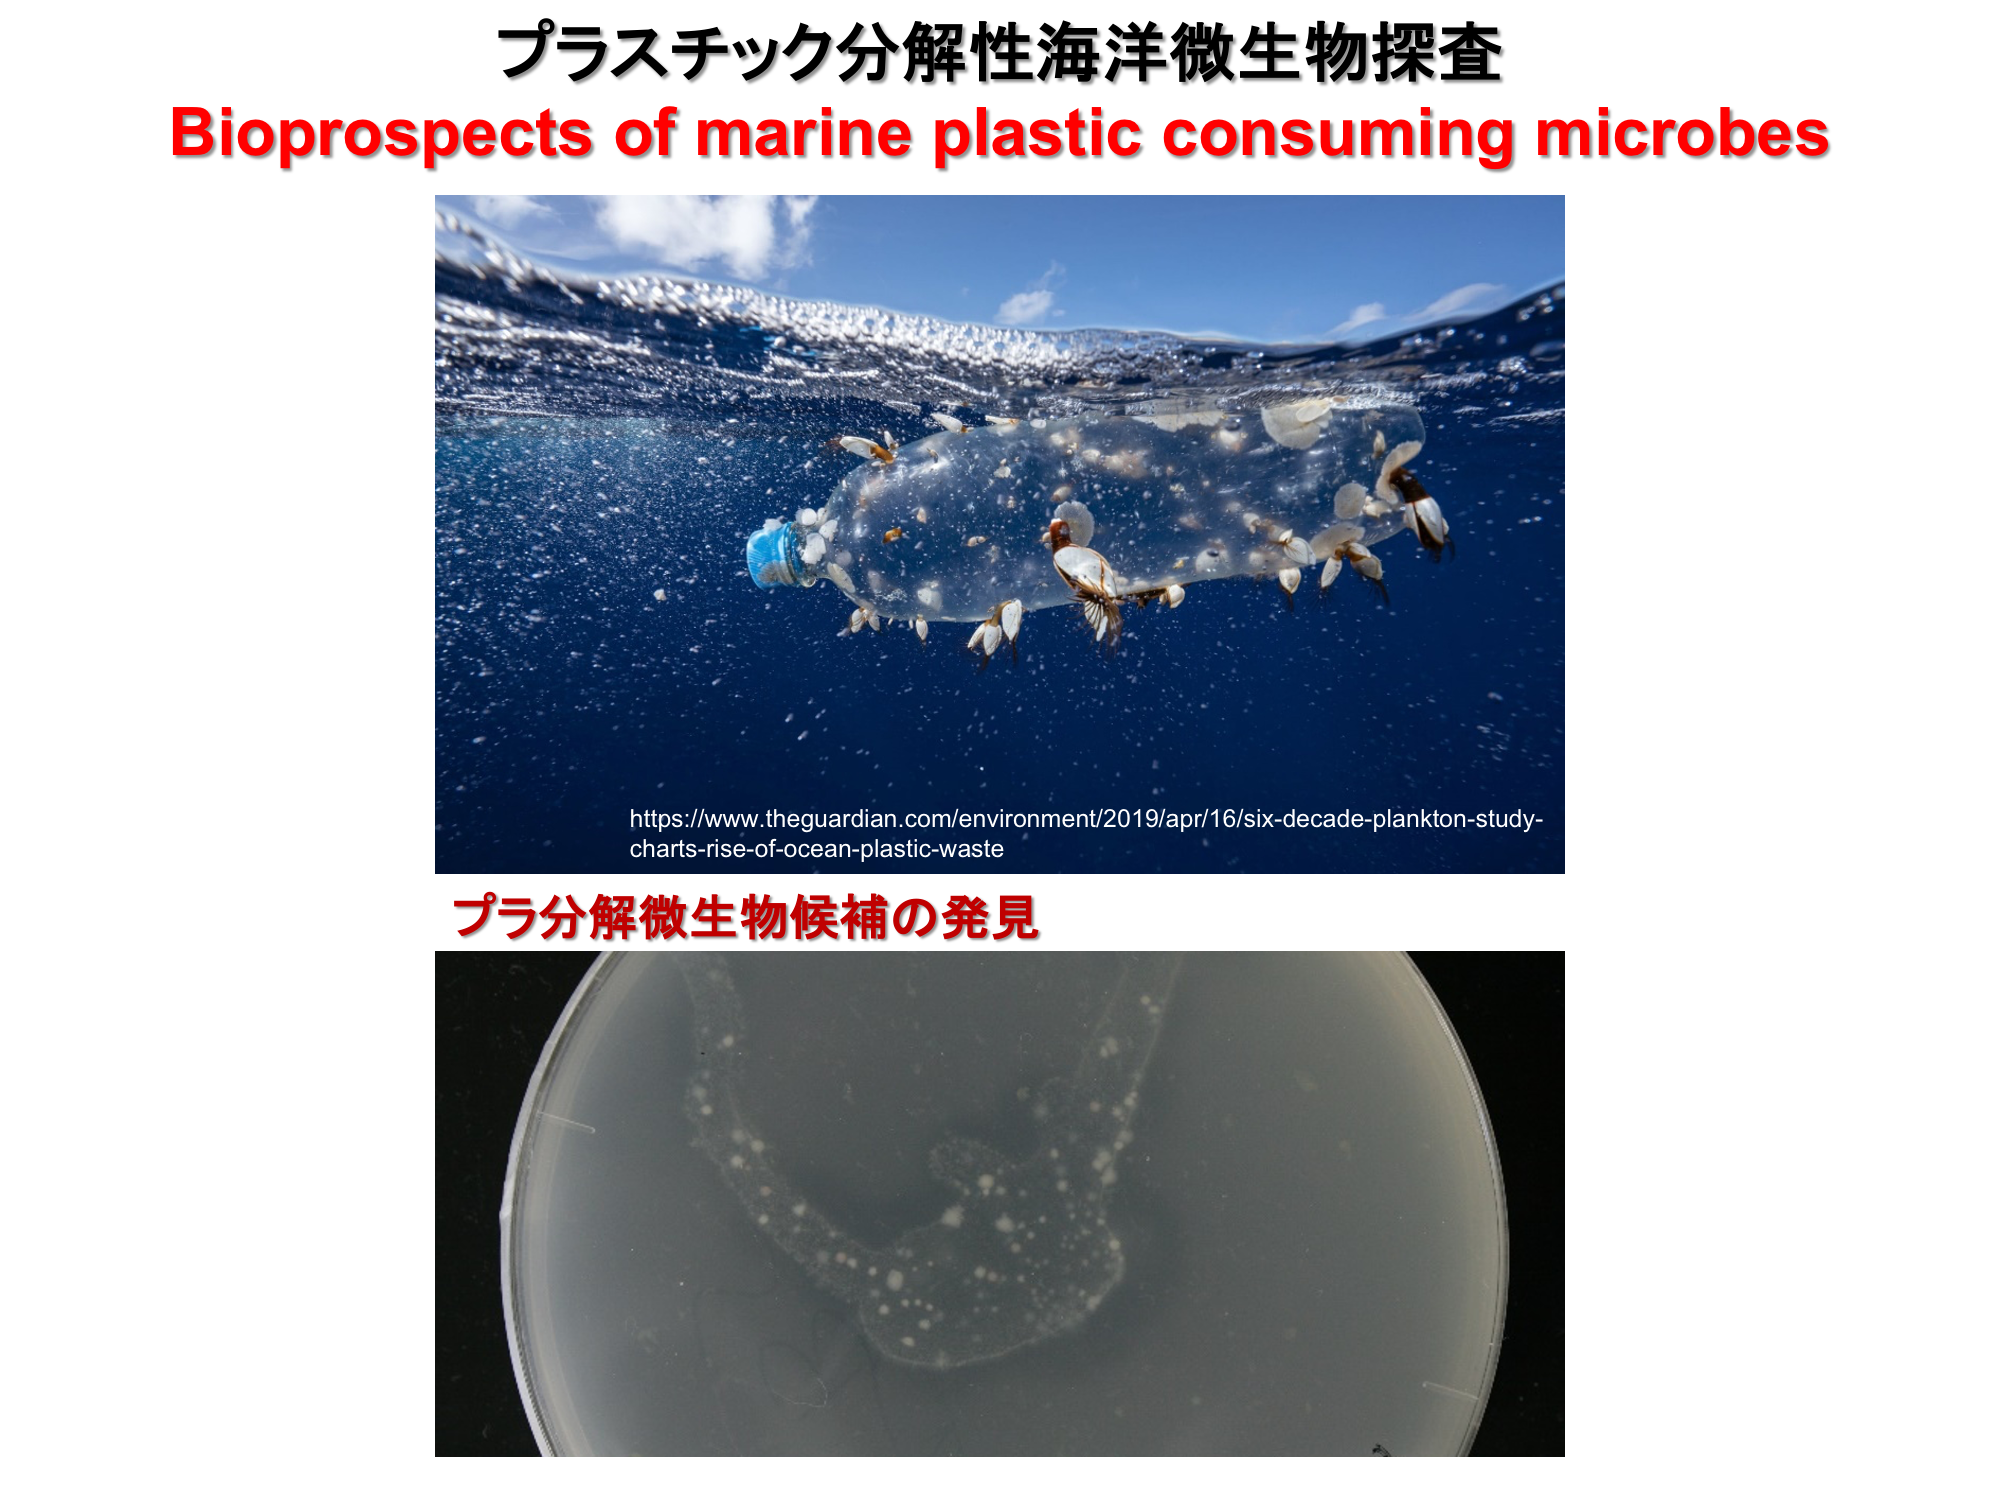 プラスチック分解性海洋微生物探査